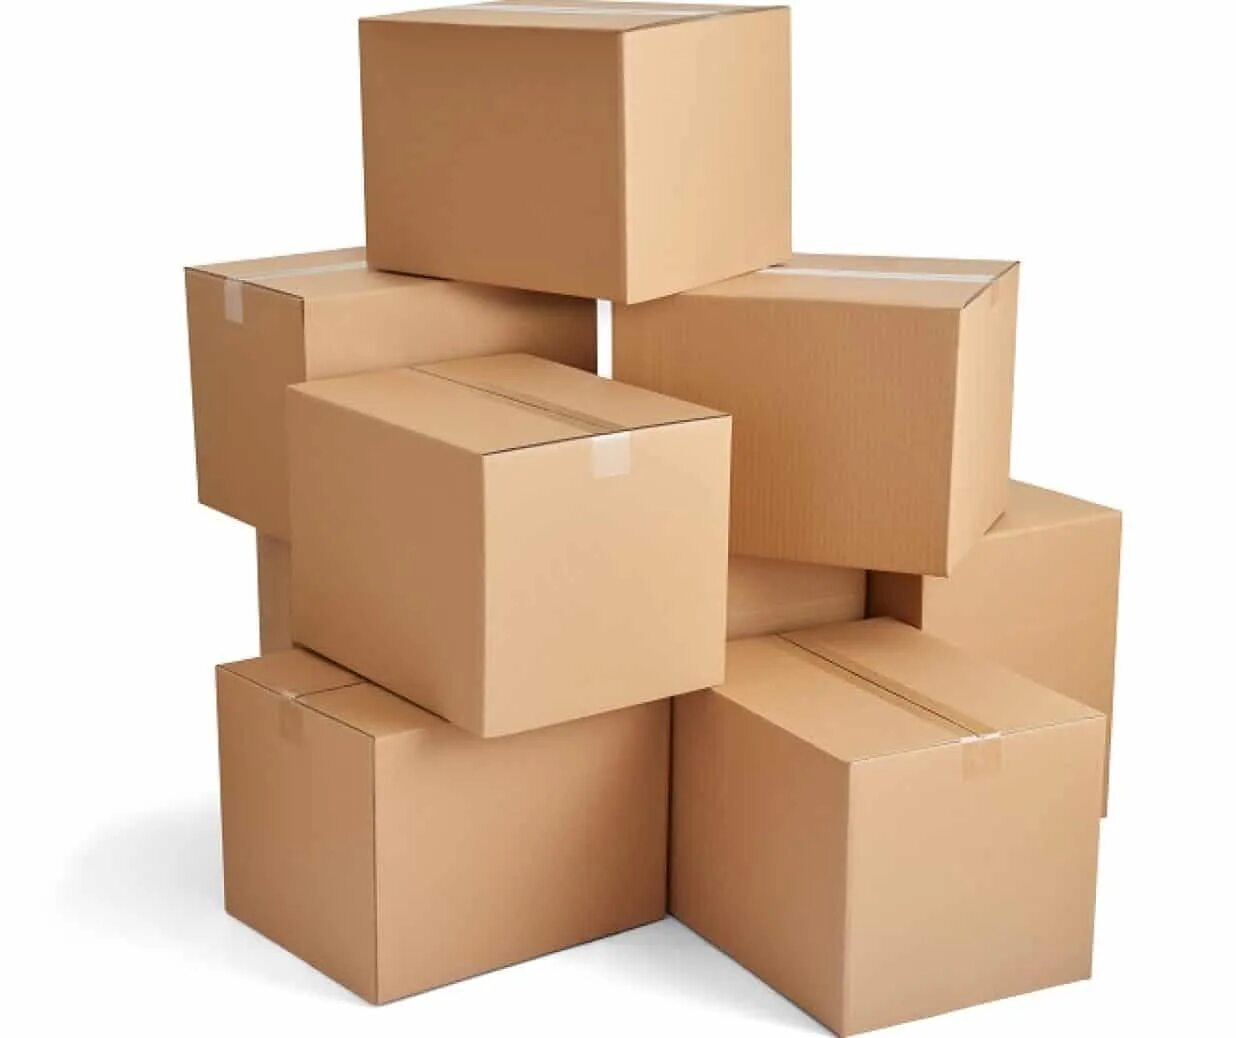 Картонная коробка. Картонные коробки склад. Коробки картонные стопка. Короб картонный на склад. Company package